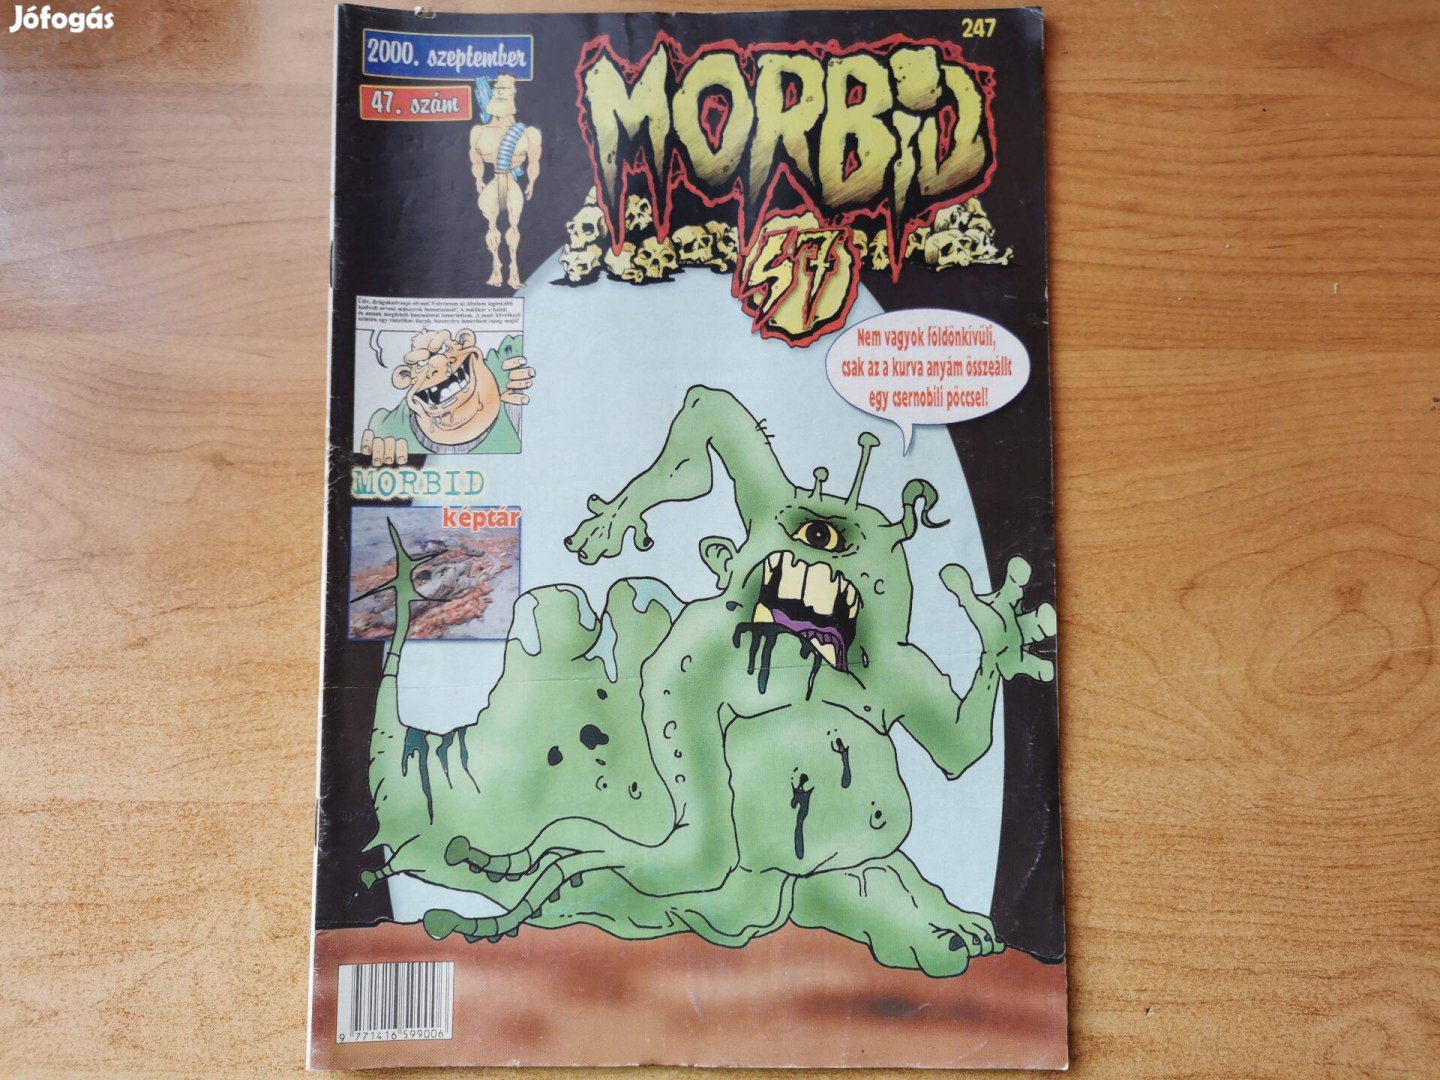 Morbid 2000 szeptember 47. szám